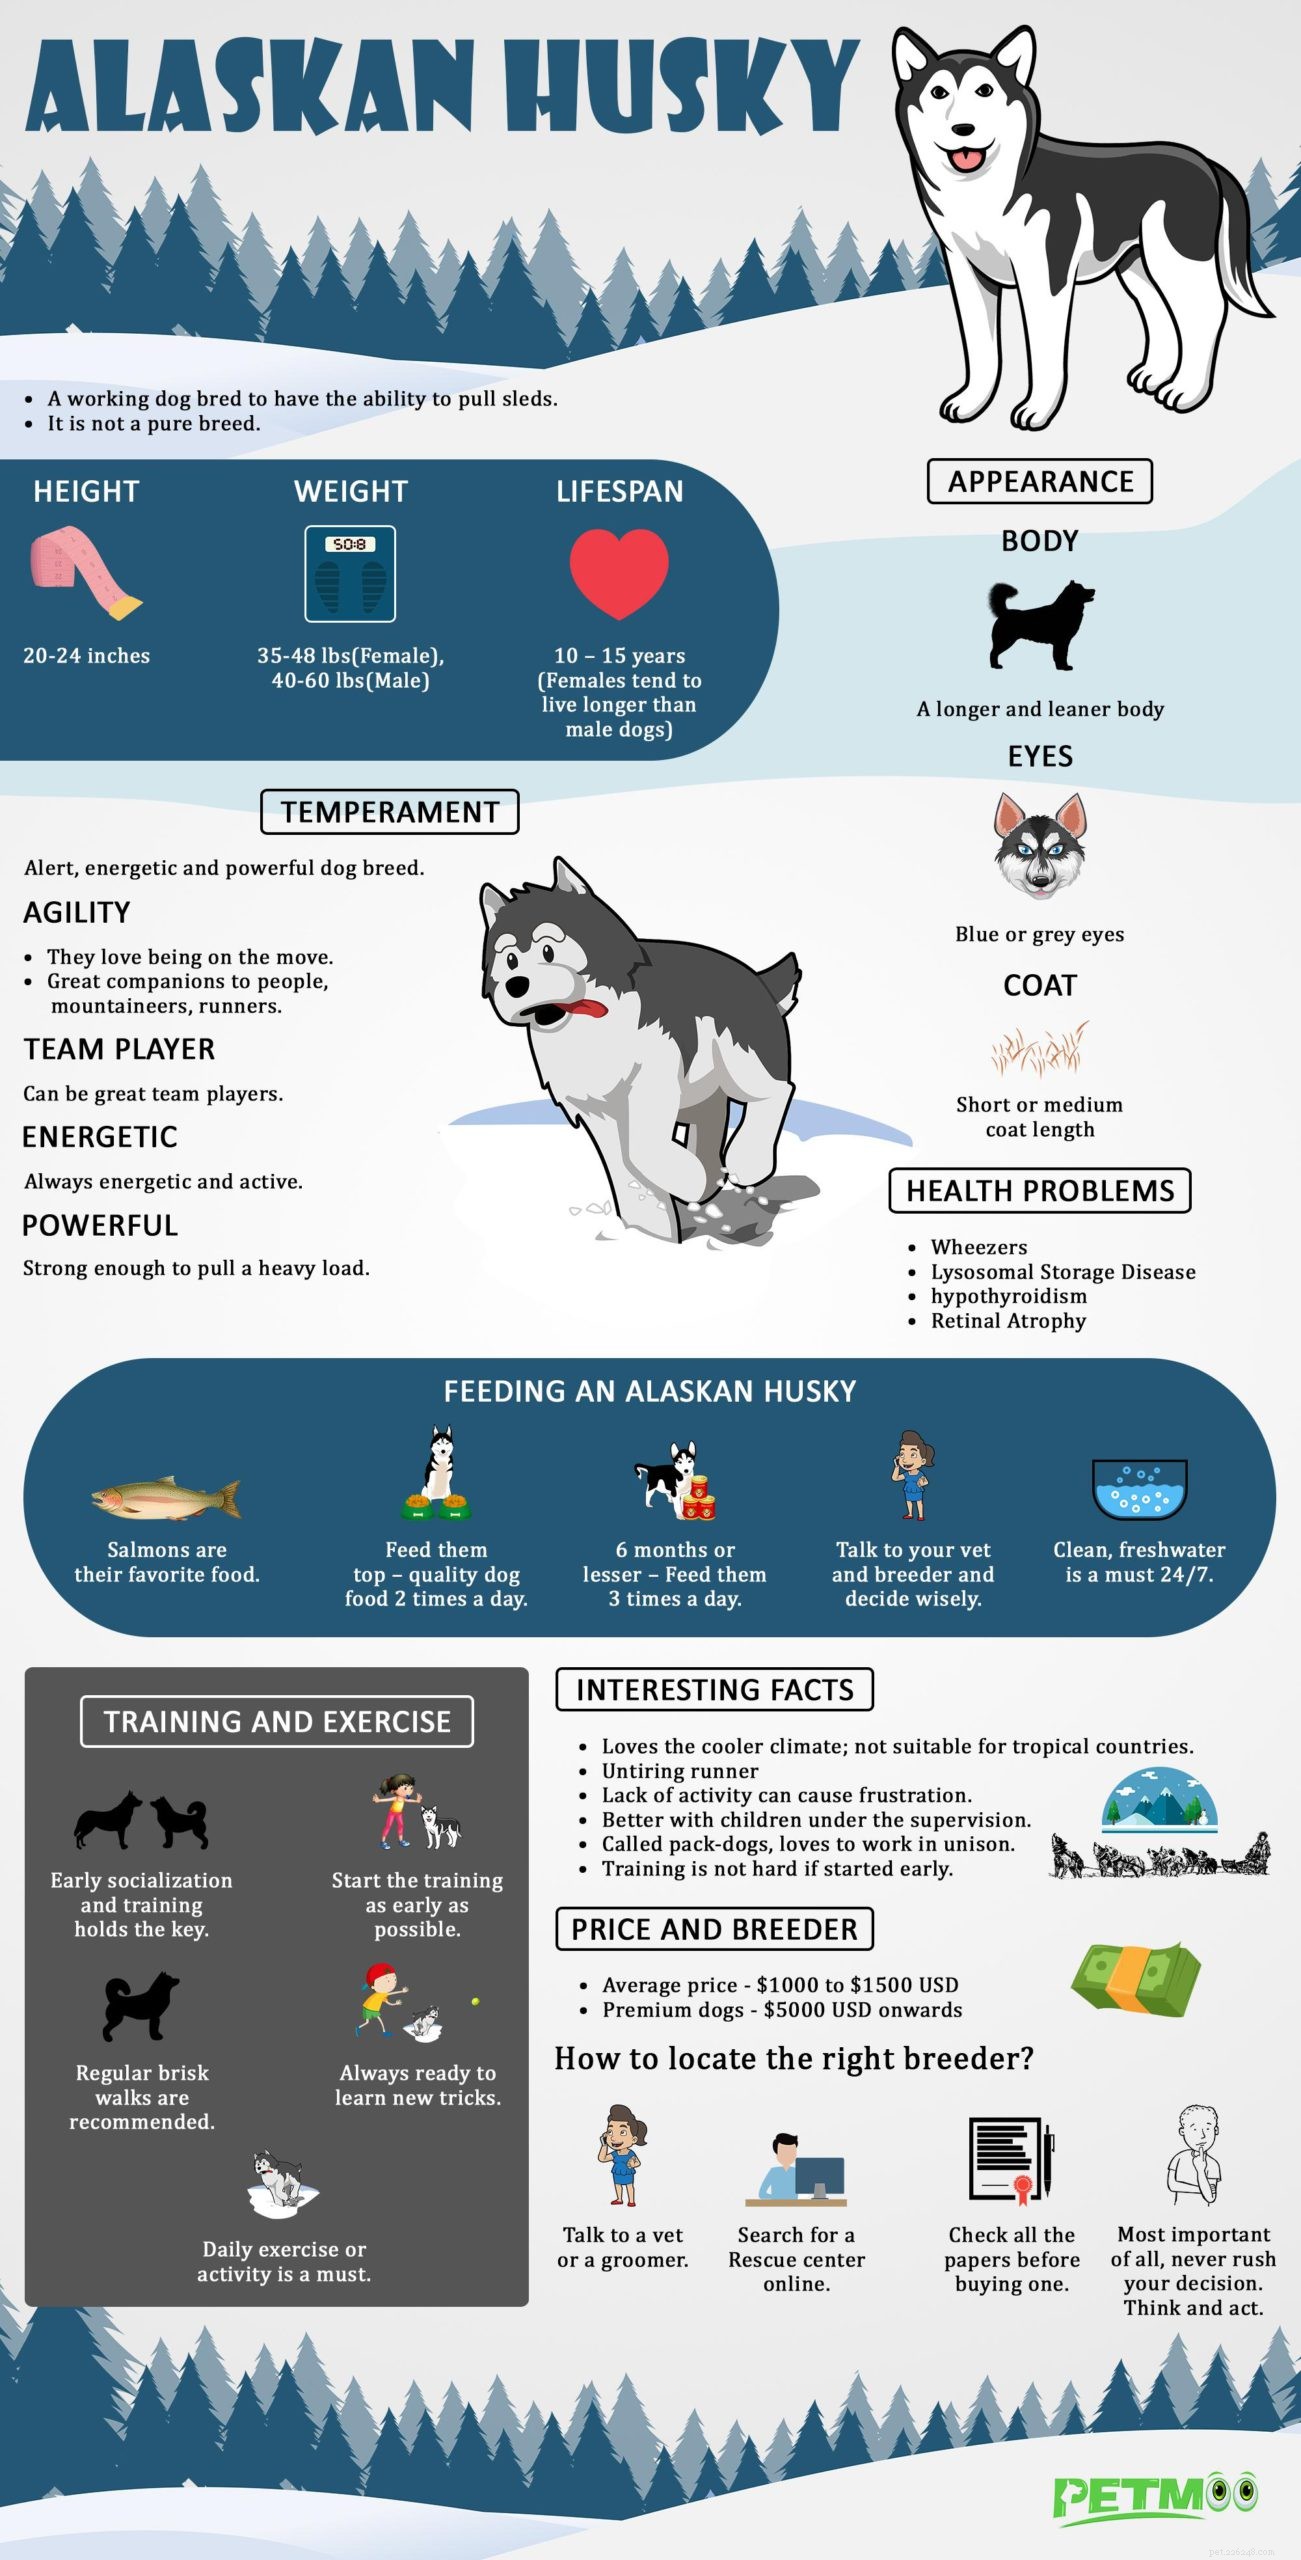 Alaskan Husky – fakta, träning och hälsoproblem